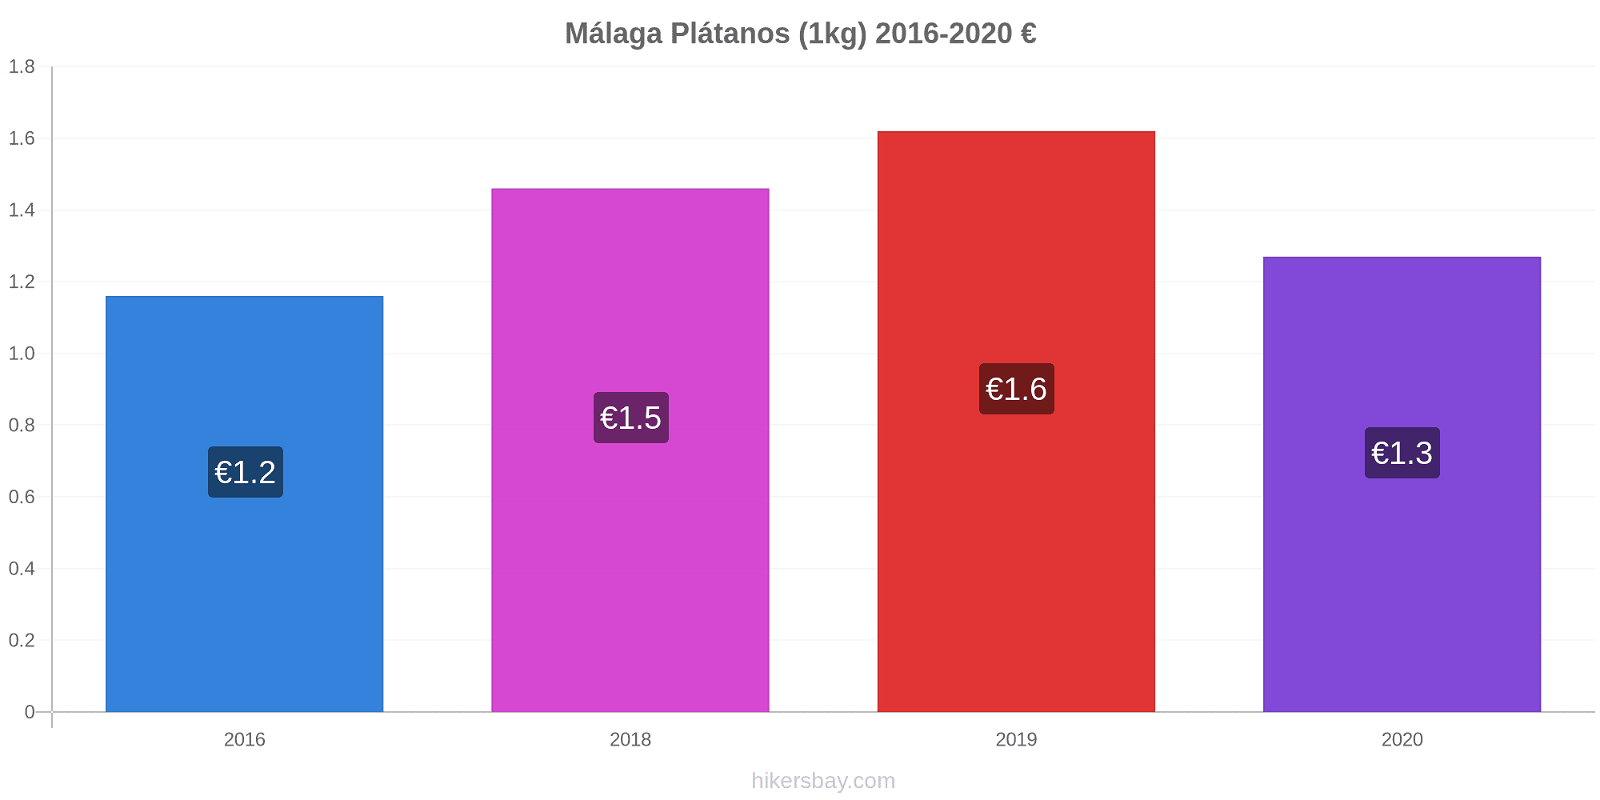 Málaga cambios de precios Plátano (1kg) hikersbay.com